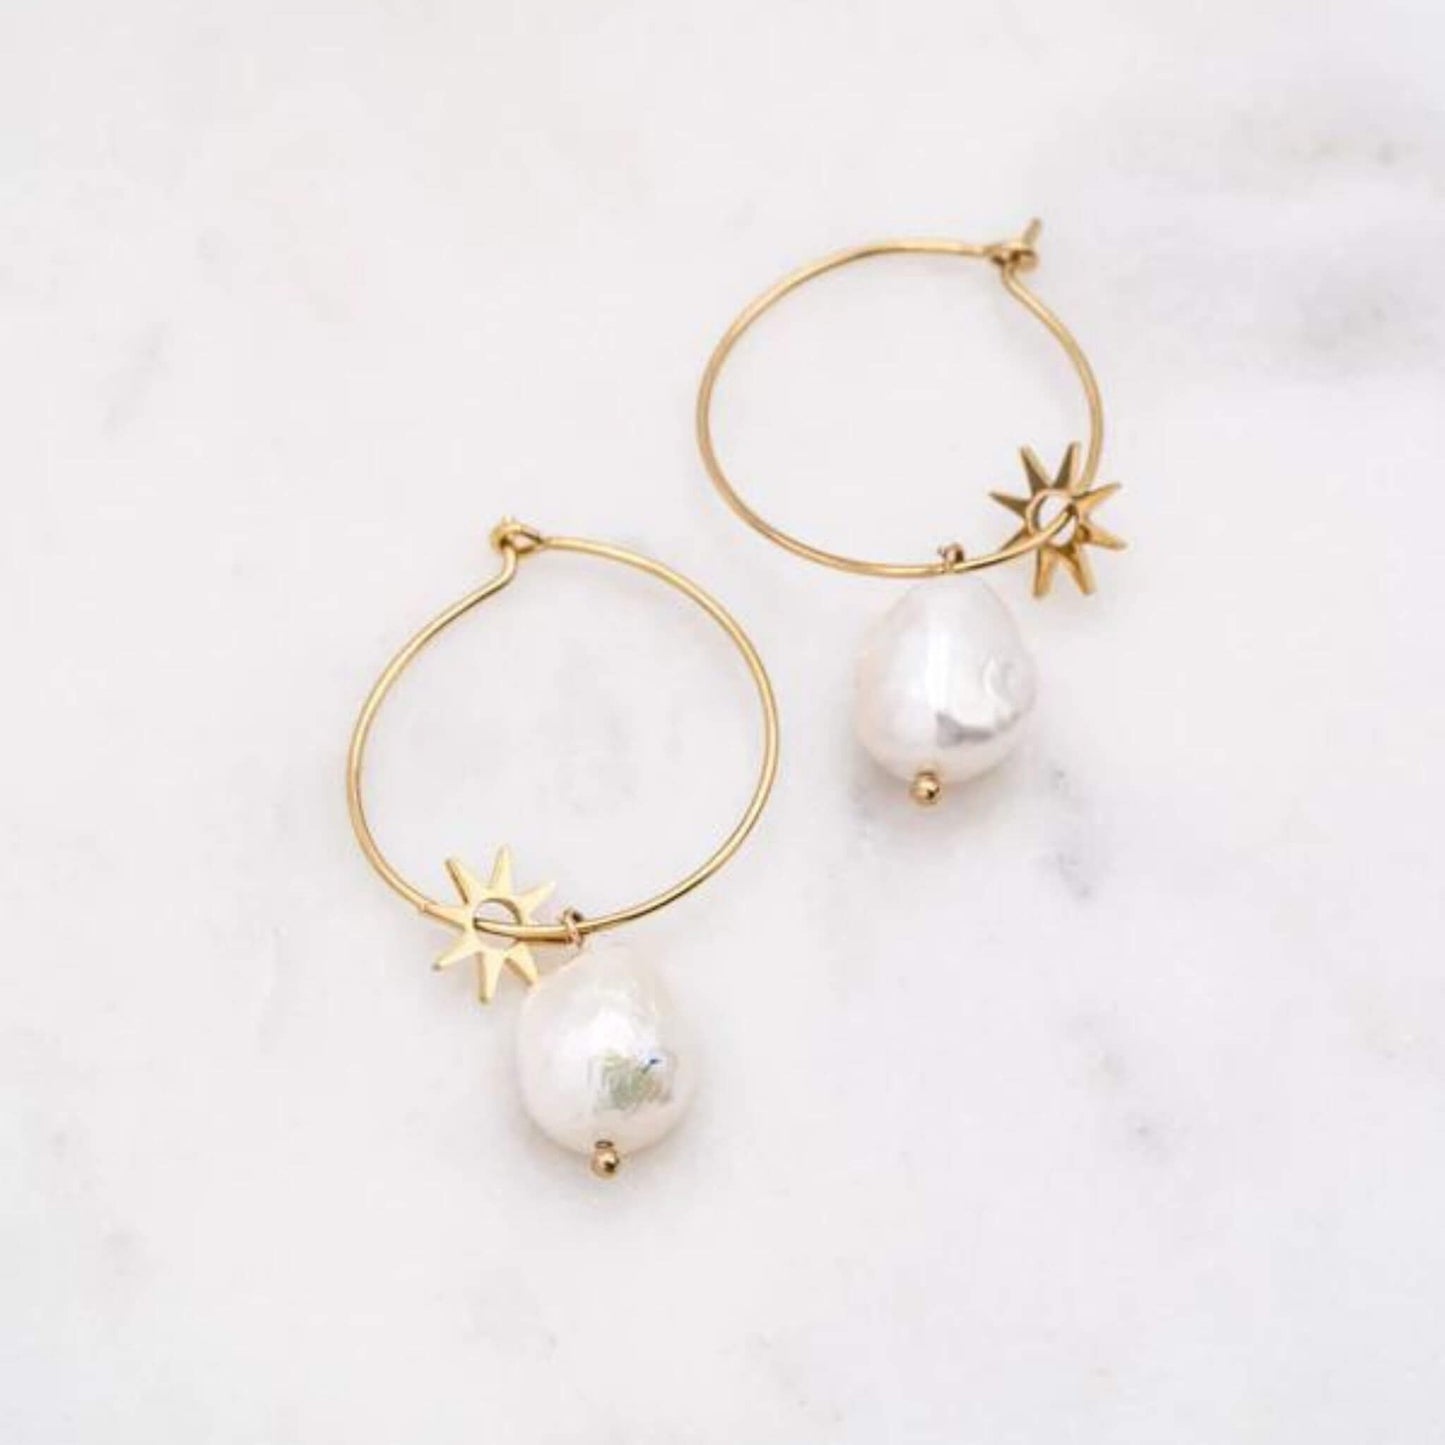 Golden Calistie hoop Earrings with sweet water pearls - Unik by Nature